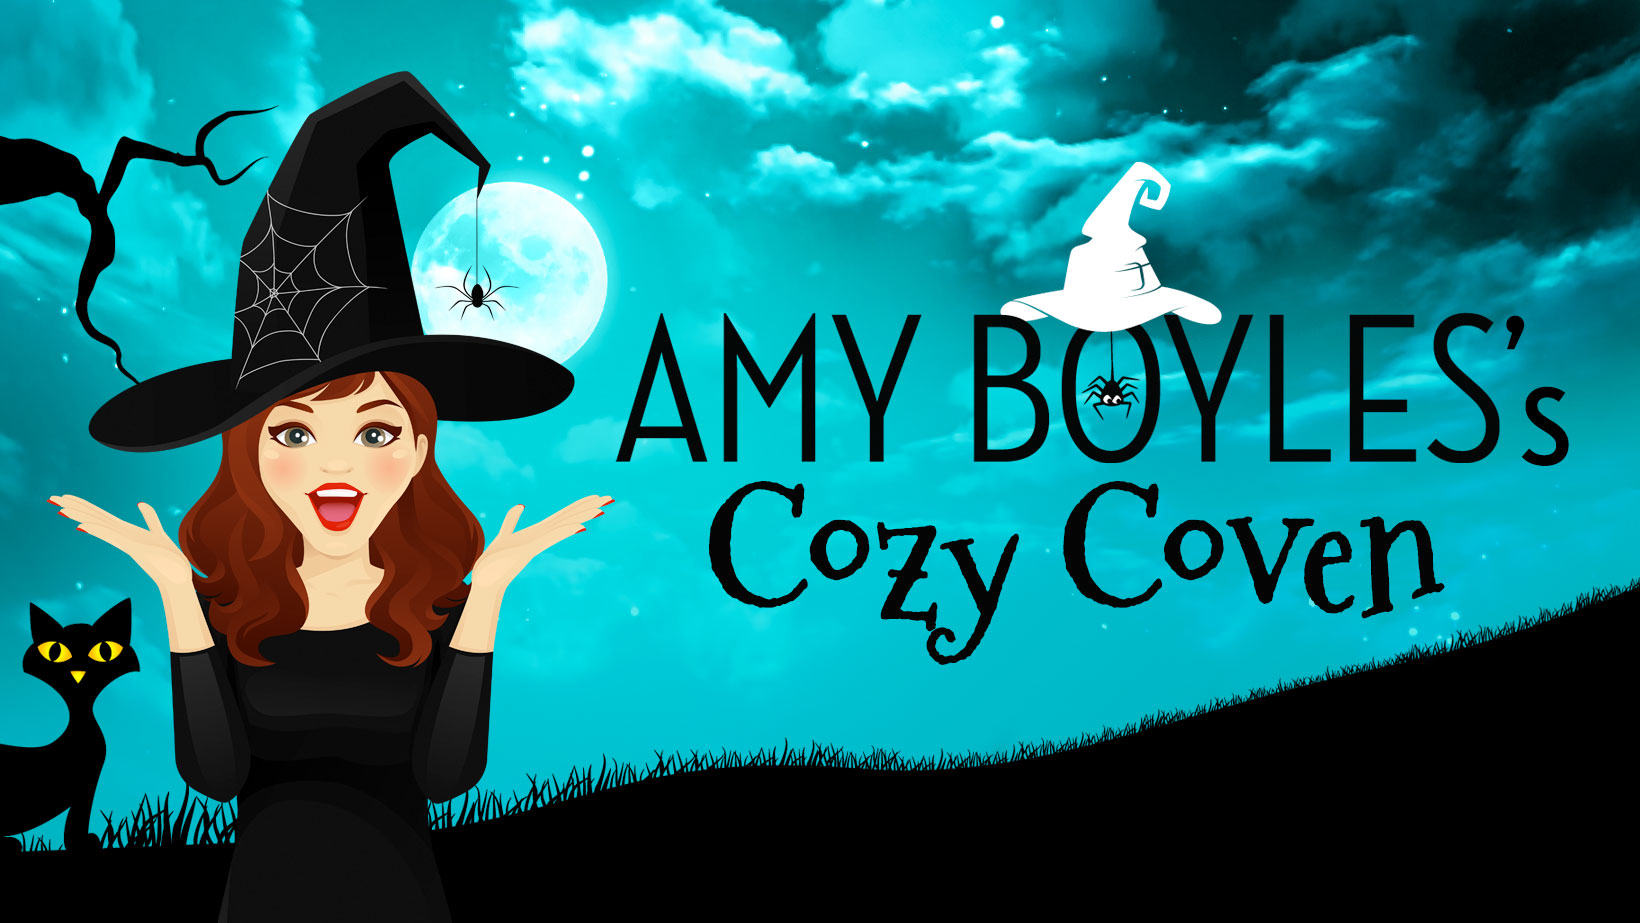 Amy Boyles's Cozy Coven